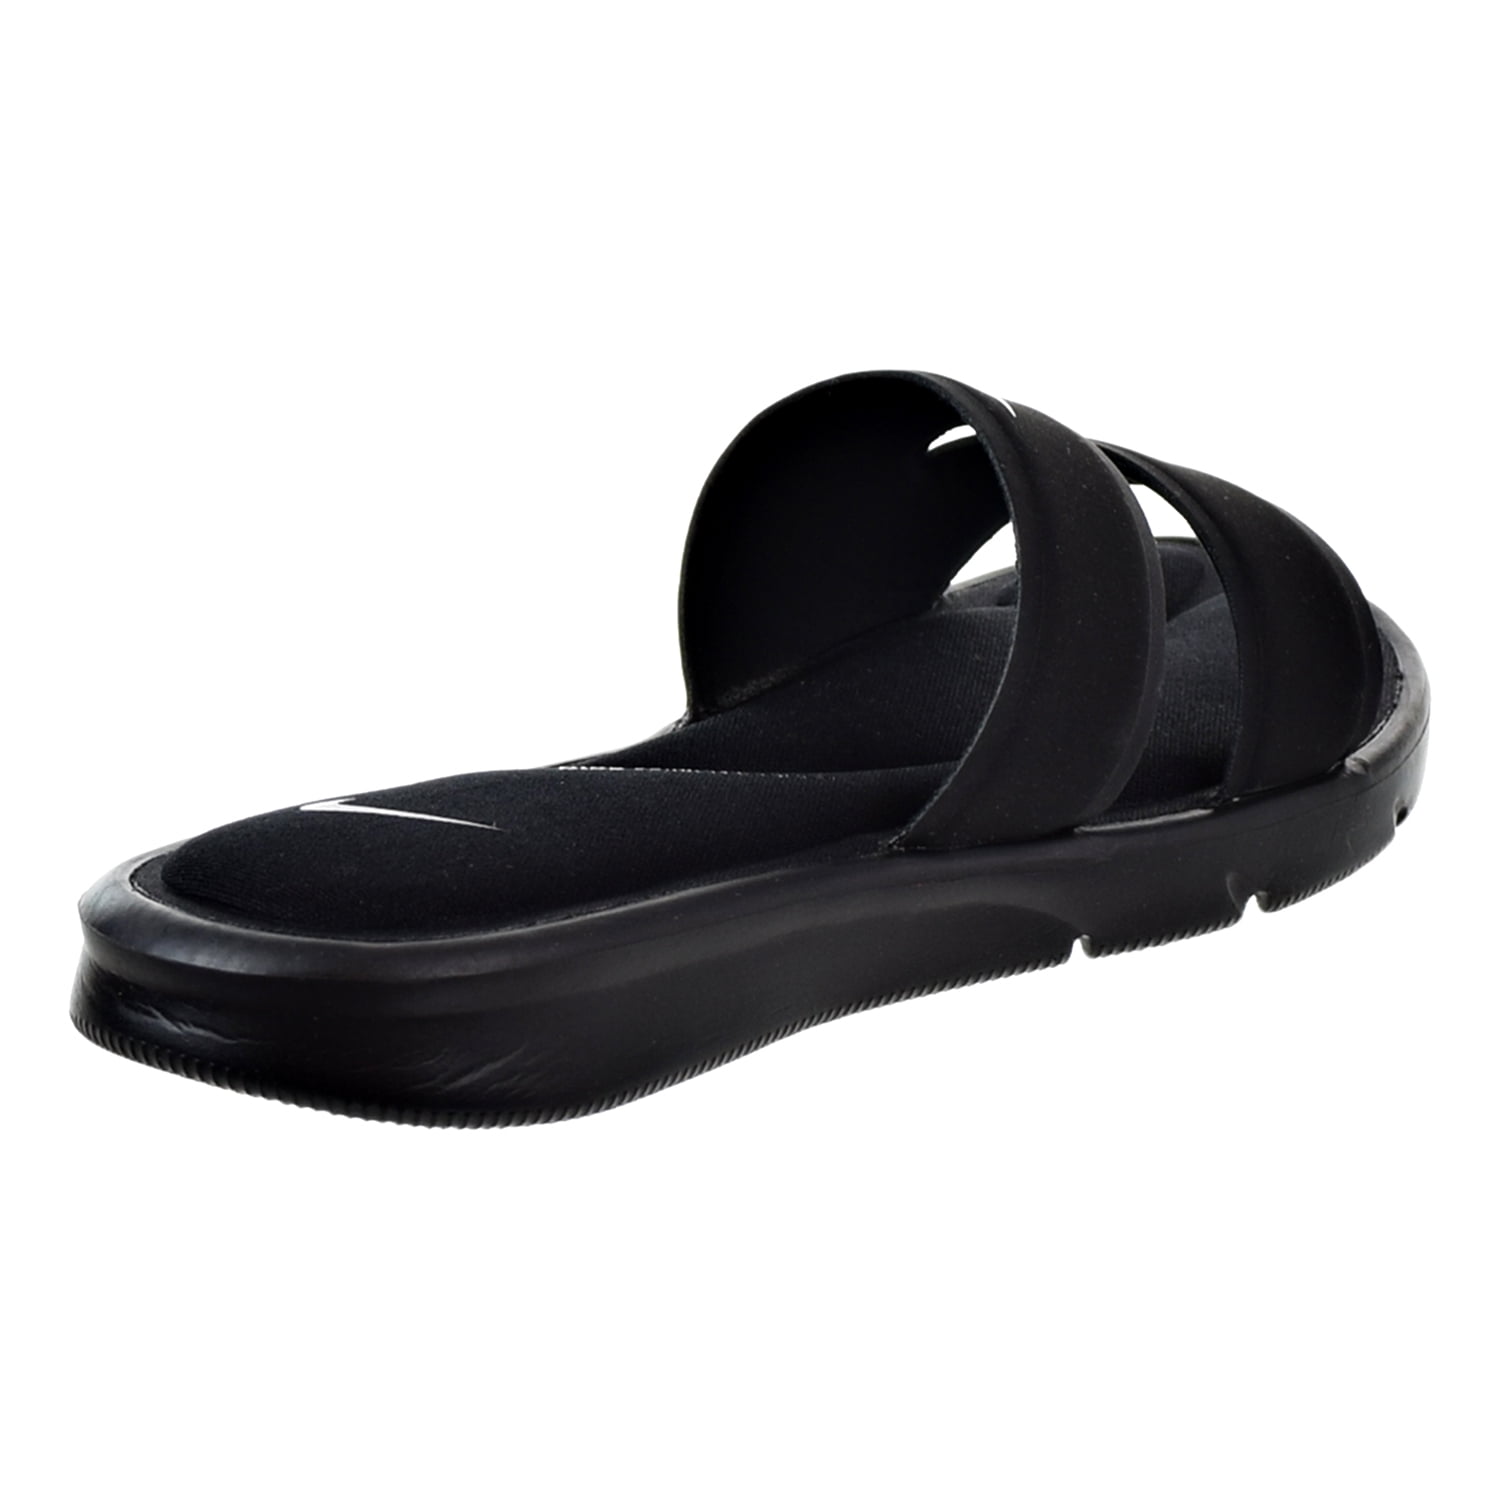 vluchtelingen lamp Tegen de wil Nike 882695-002: Women's Ultra Comfort Slide Sandal Black/White -  Walmart.com